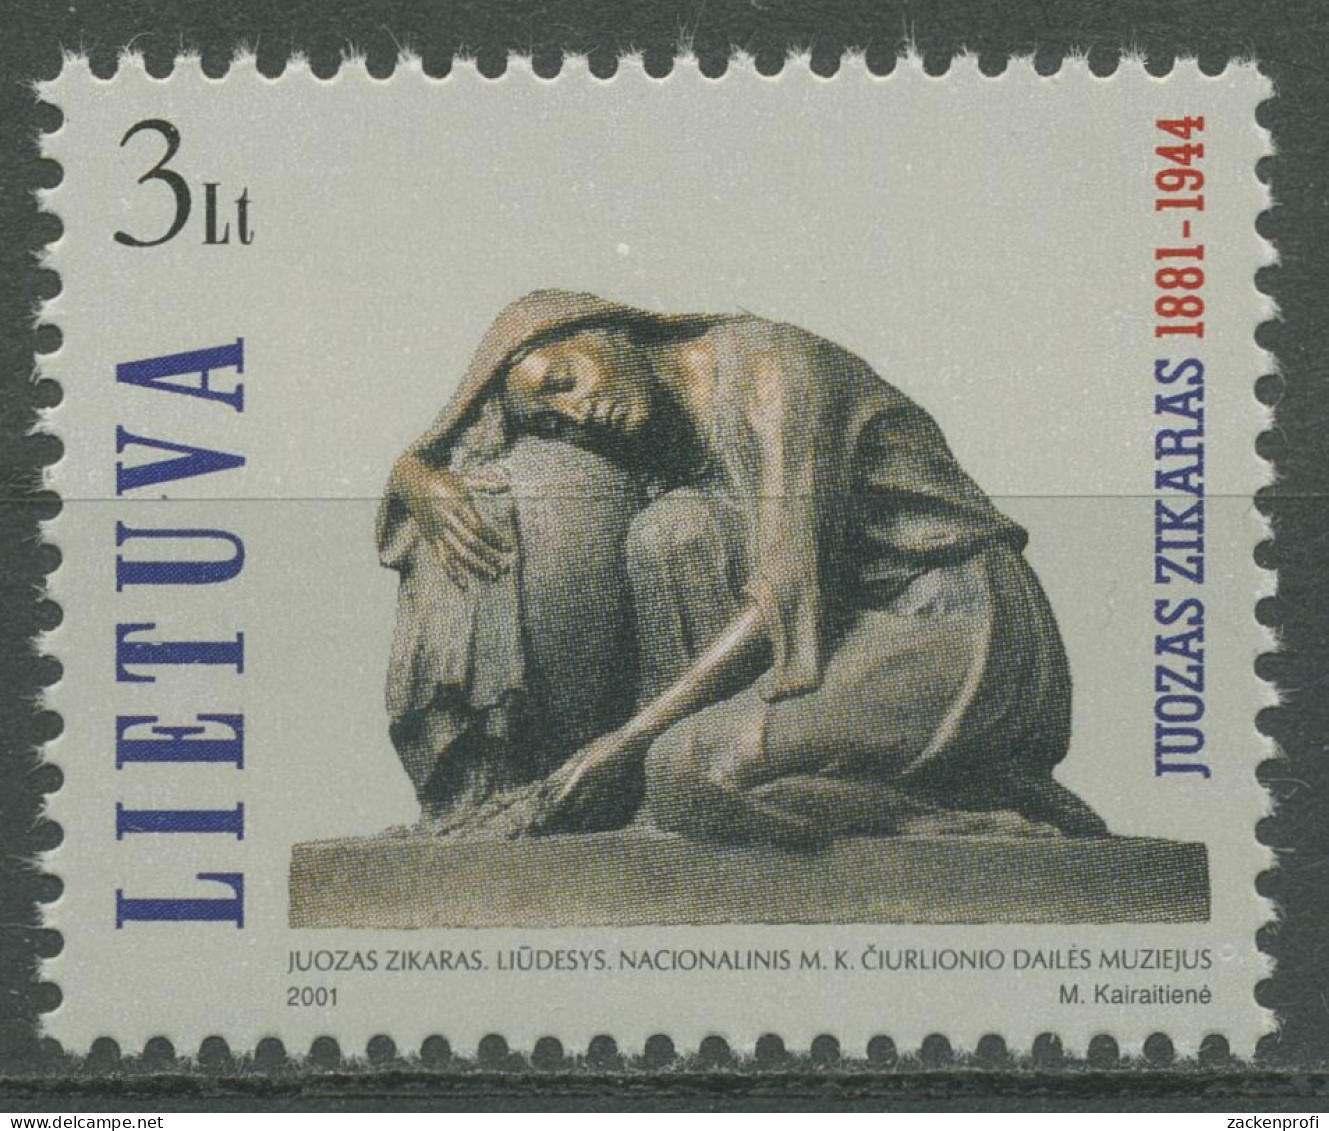 Litauen 2001 Bildhauer Juozas Zikaras Skulptur 772 Postfrisch - Lituanie